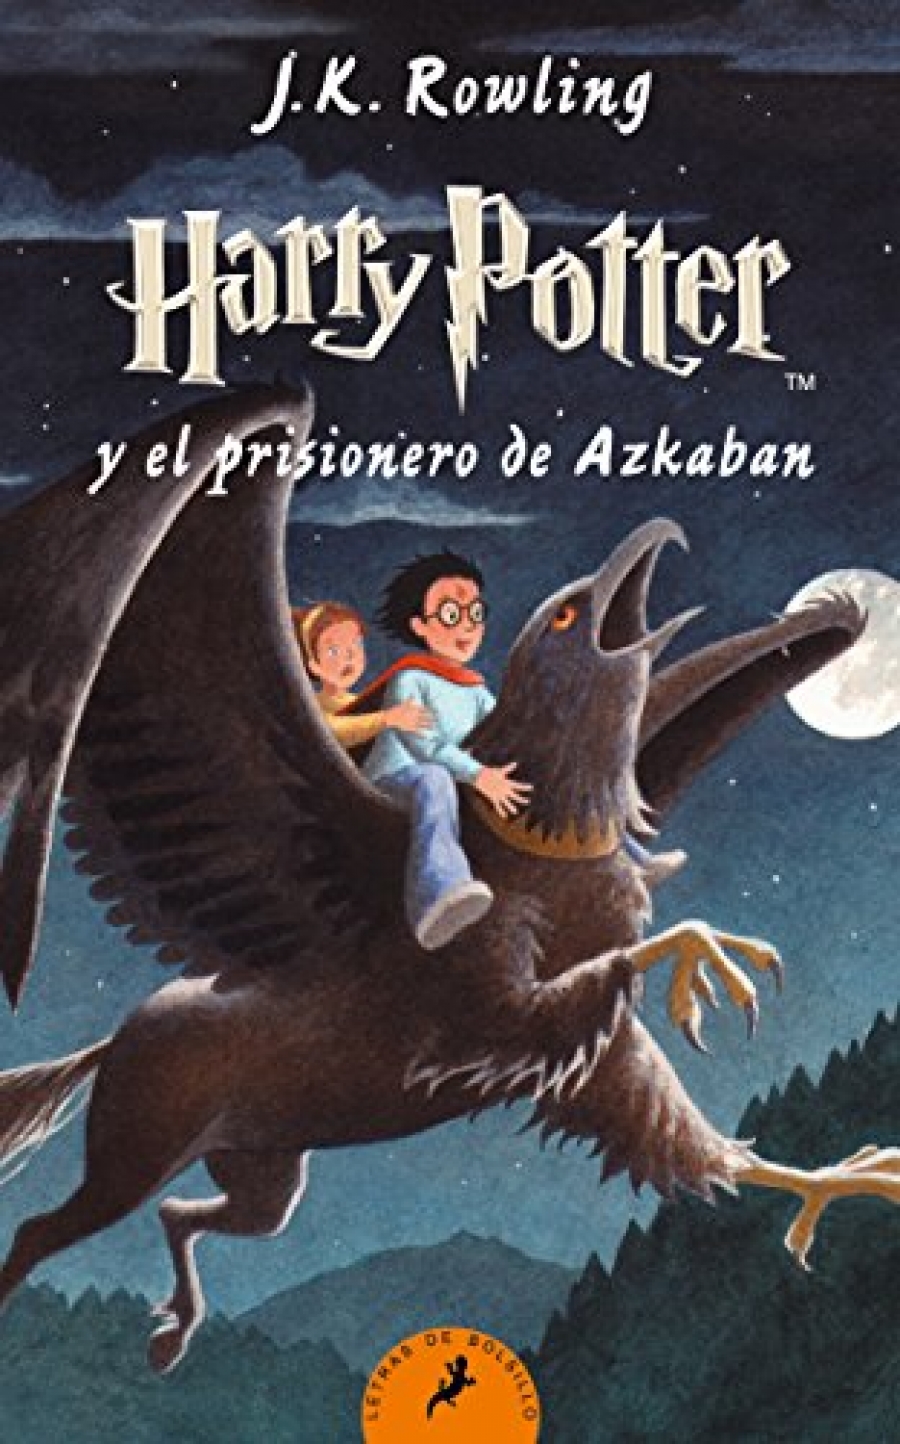 Rowling J.K. Harry Potter y el prisionero de Azkaban 